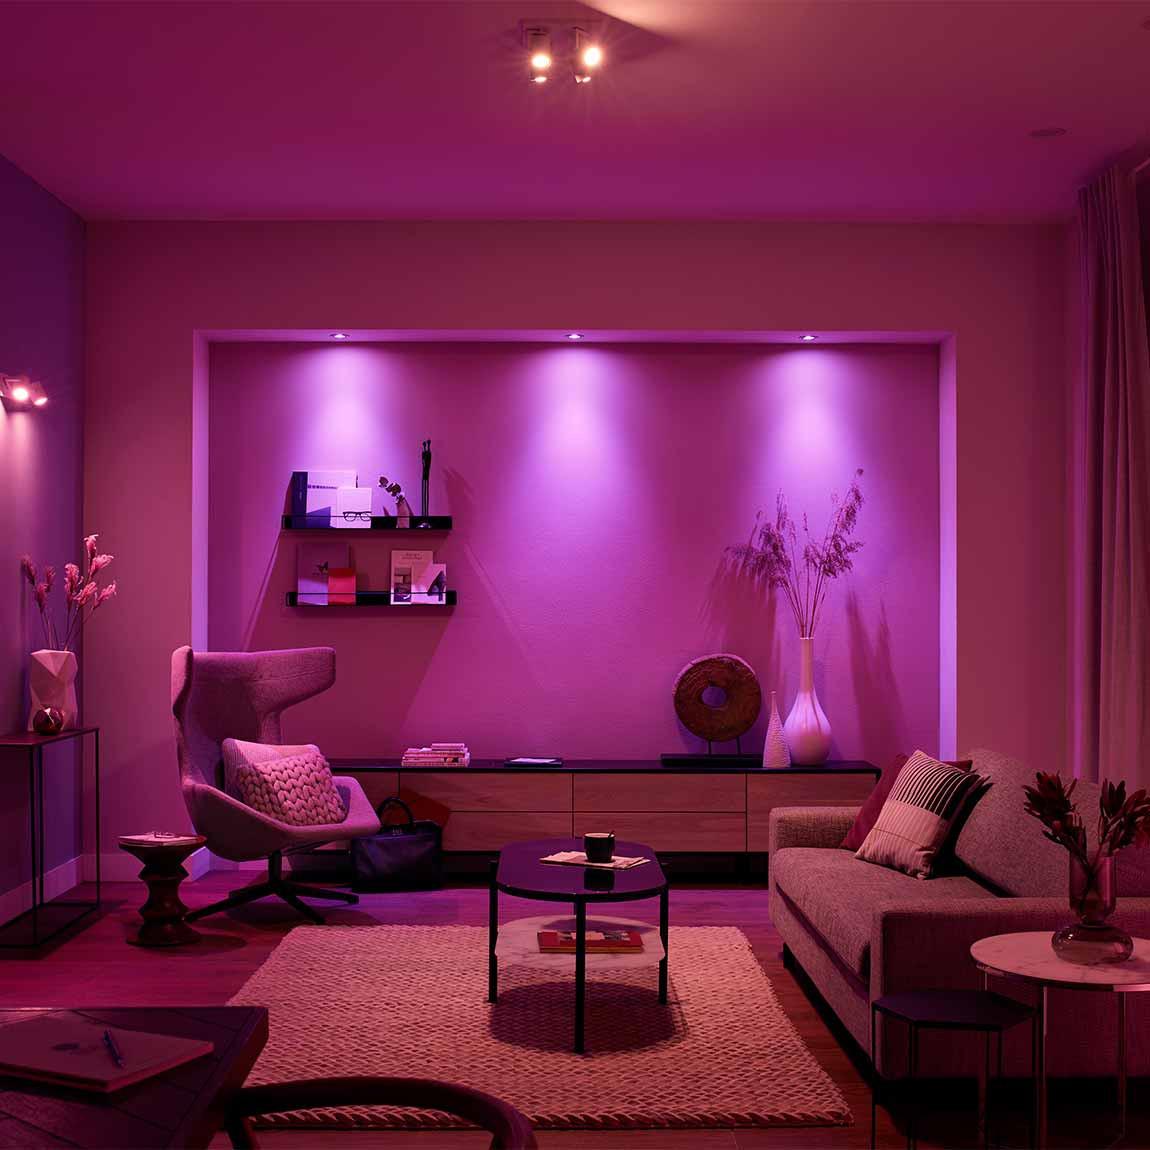 Philips Hue White & Color Ambiance Centura Einbauspot 3 flg. - schwarz - Lifestyle Wohnzimmer rosa Licht